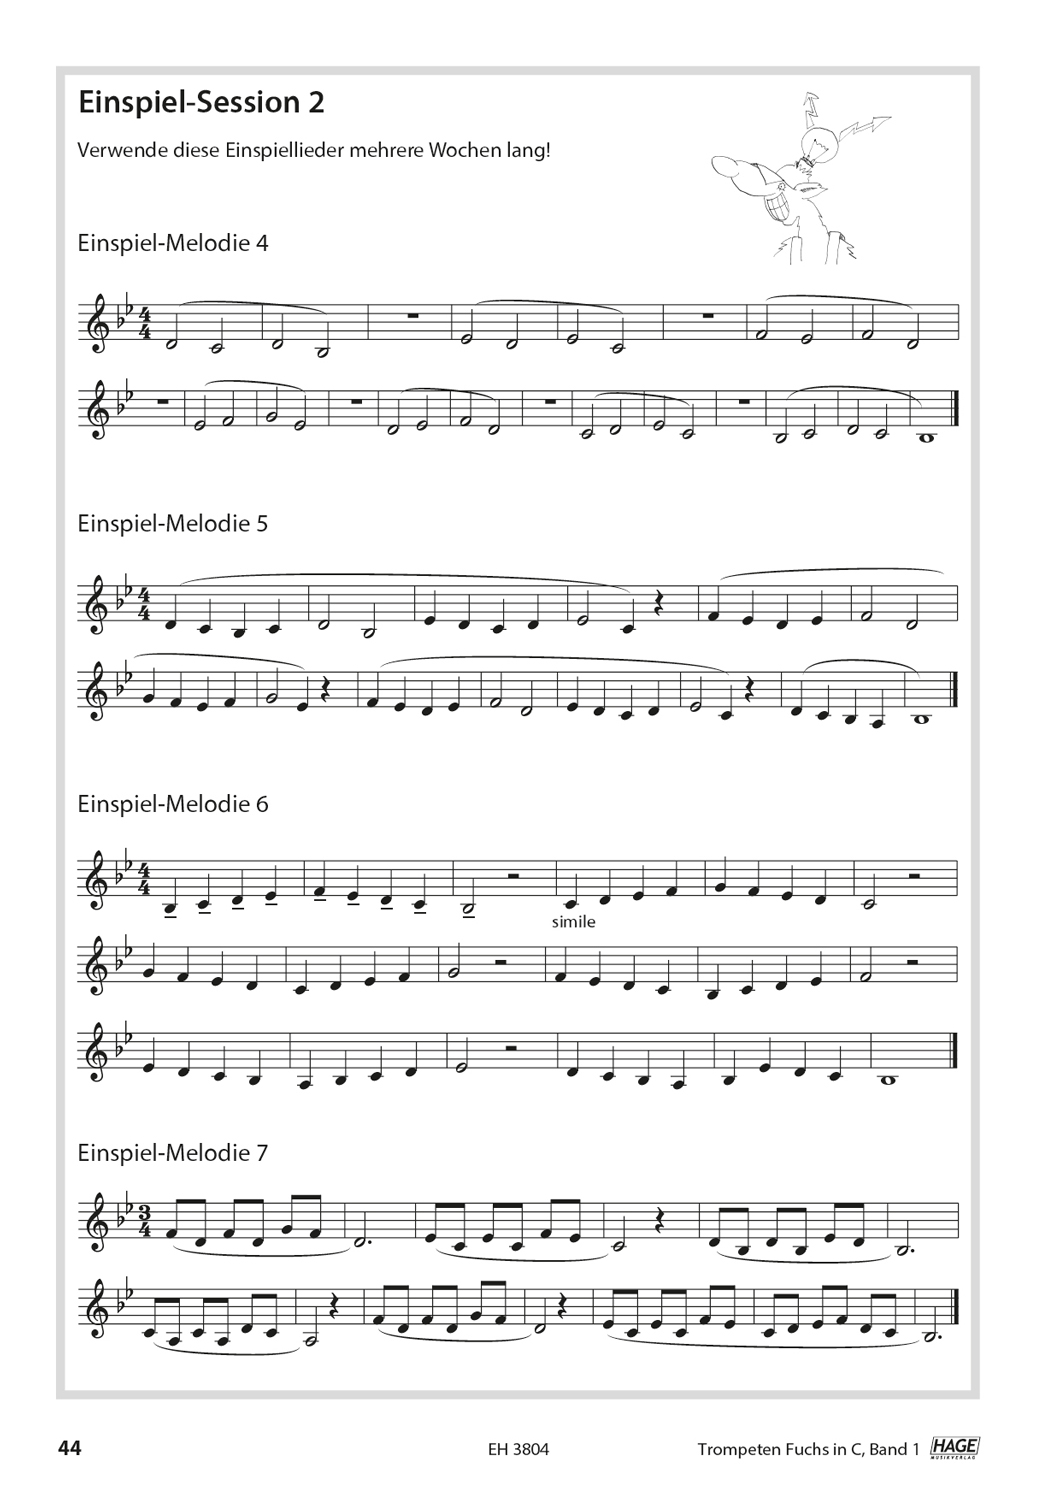 Trompeten Fuchs Band 1 in C für Posaunenchor Seiten 7